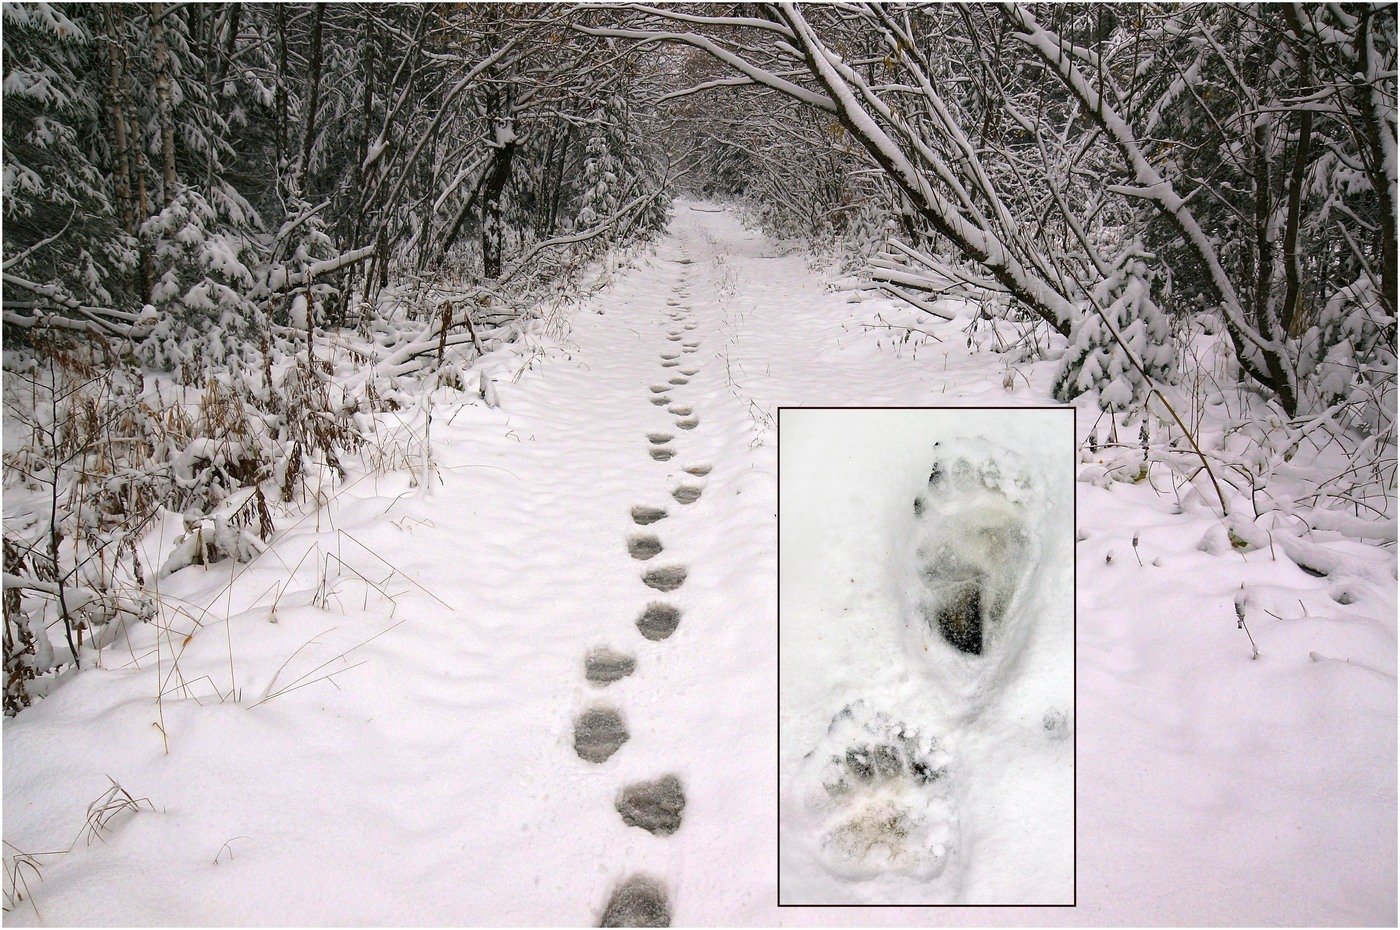 Зверя по следам слушать. Следы медведя зимой. Следы чупакабры на снегу. Следы медведя на снегу. Следы животных на снегу медведя.